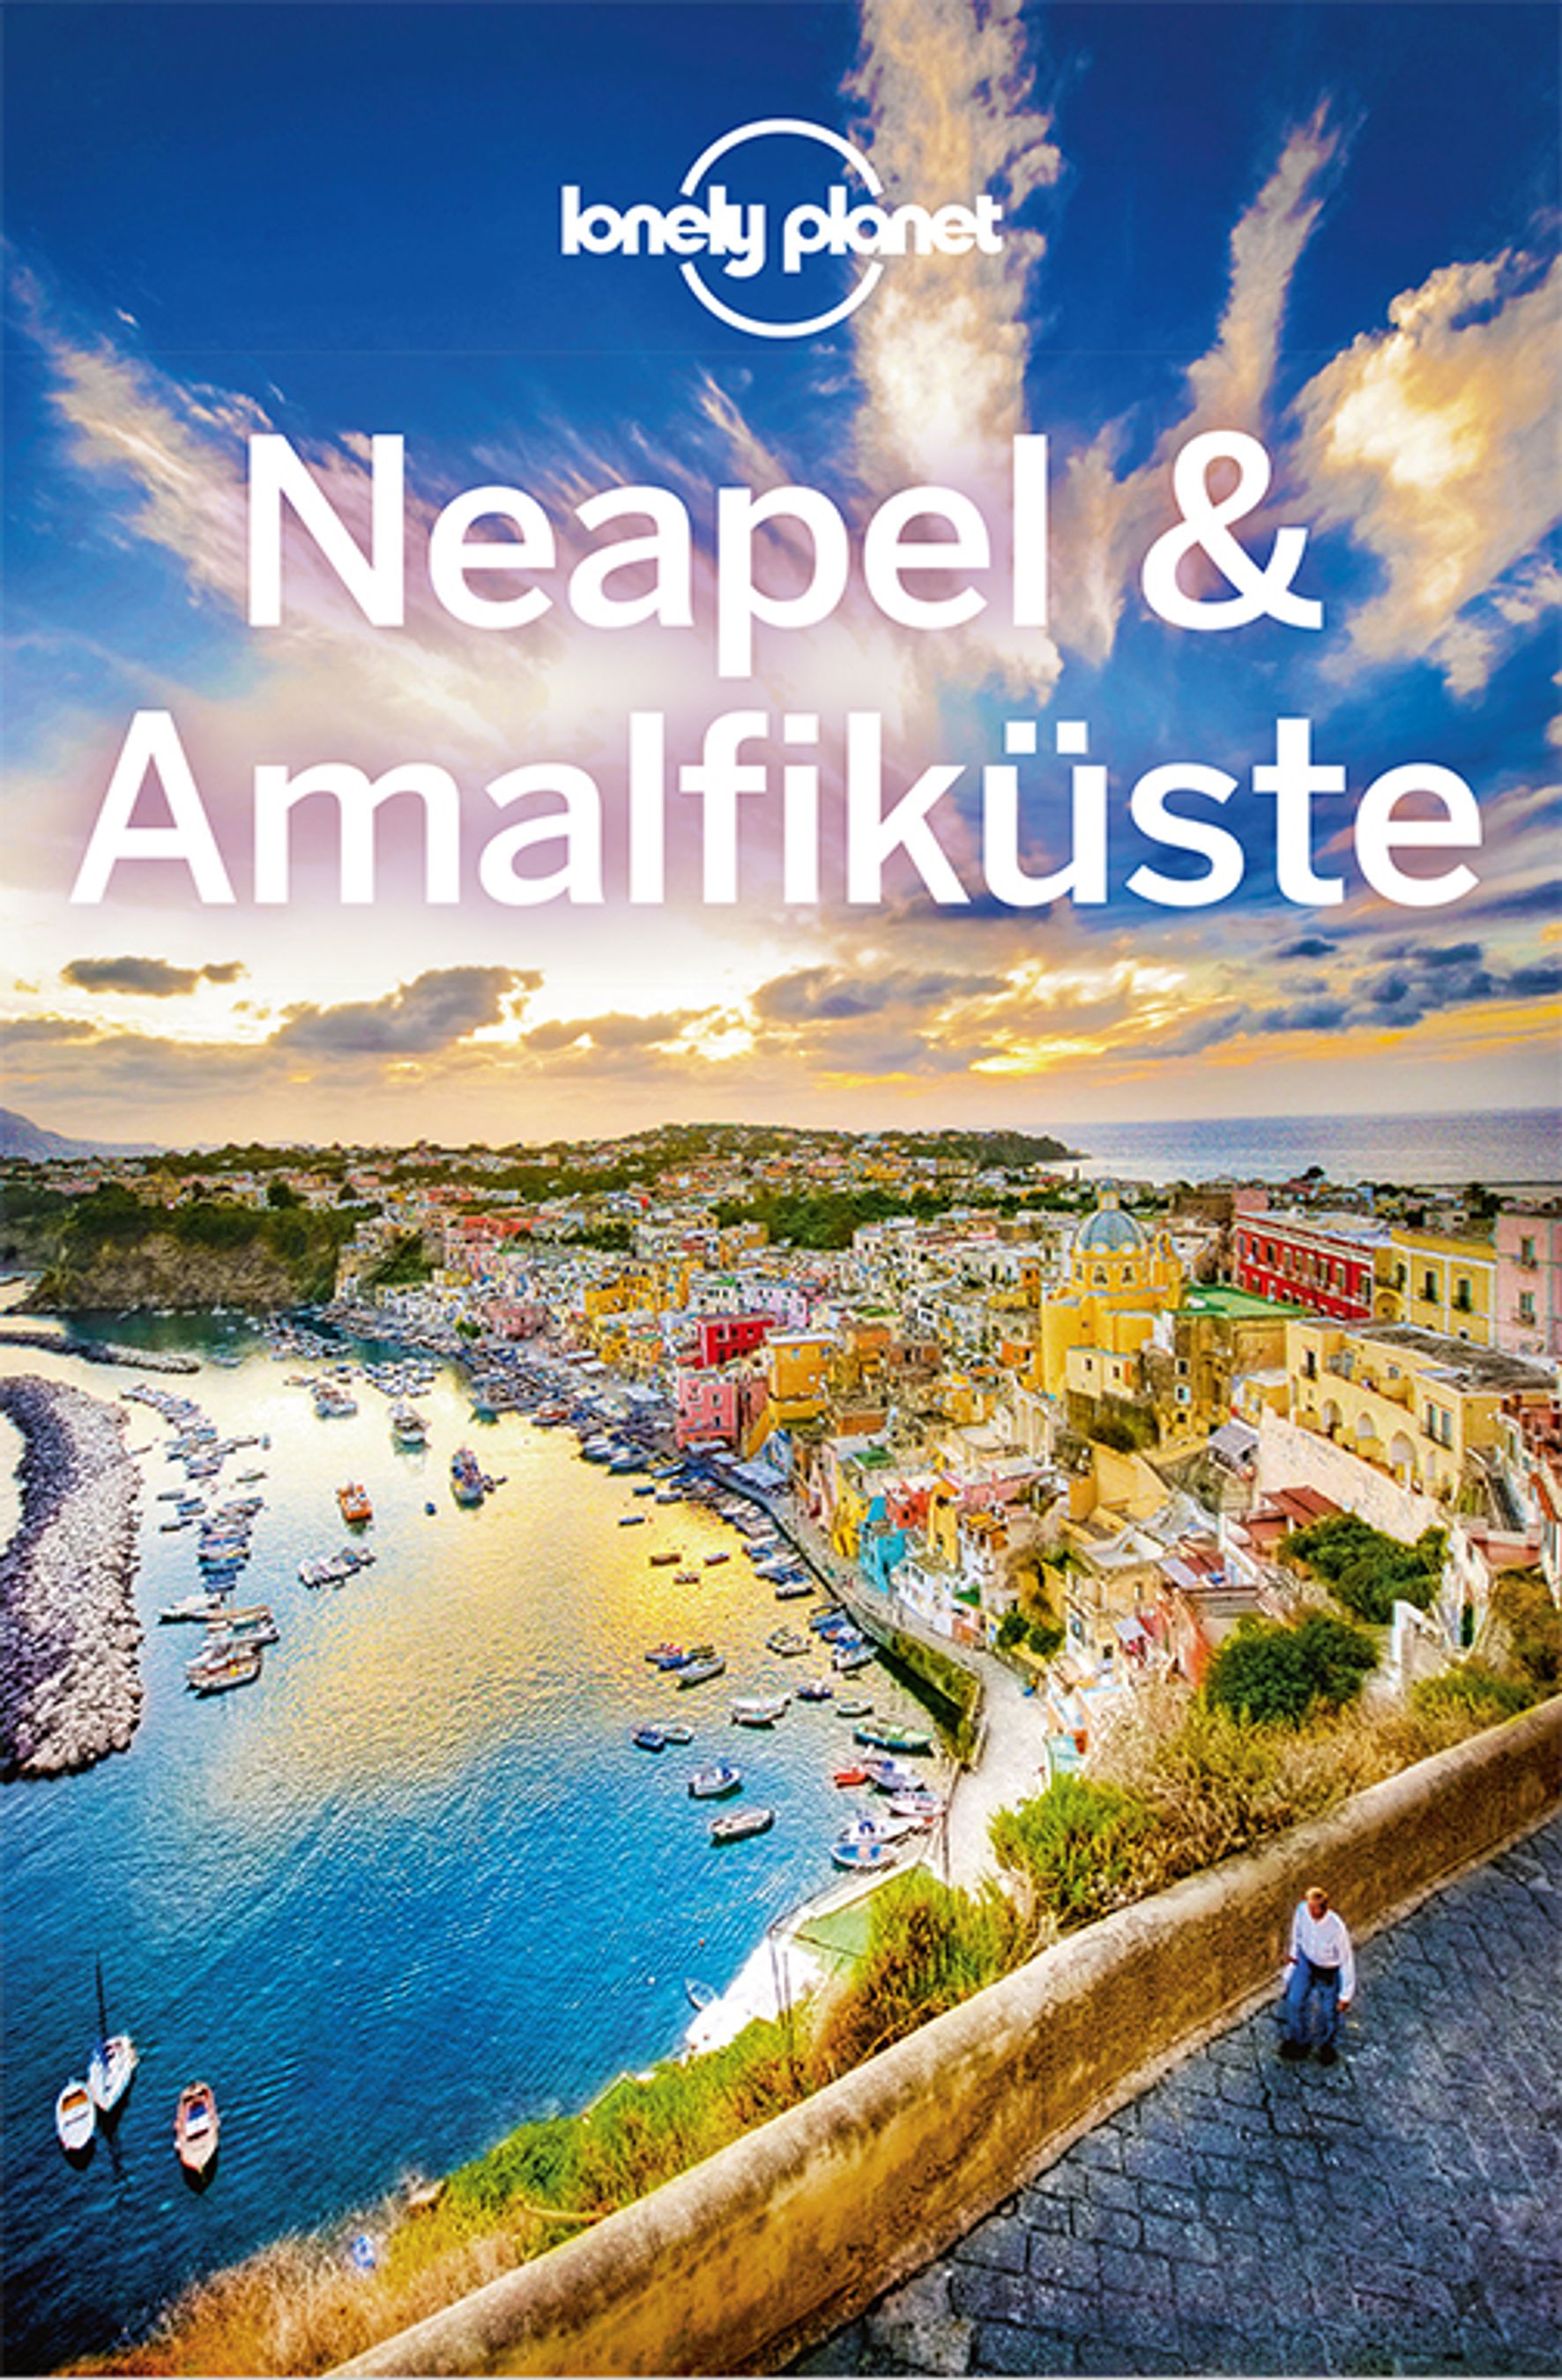 Lonely Planet Neapel & Amalfiküste